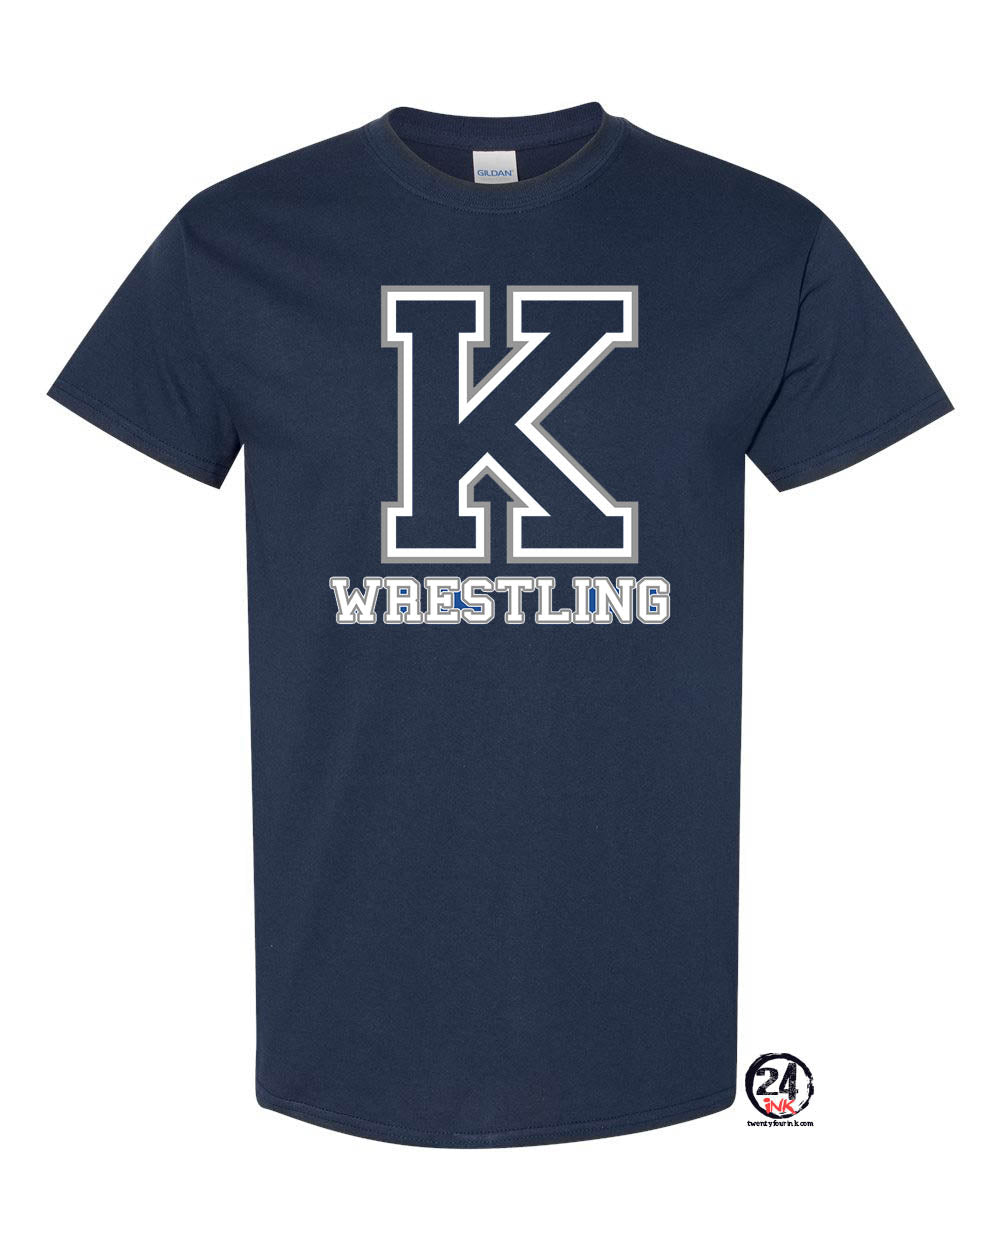 Kittatinny Wrestling Design 6 t-Shirt